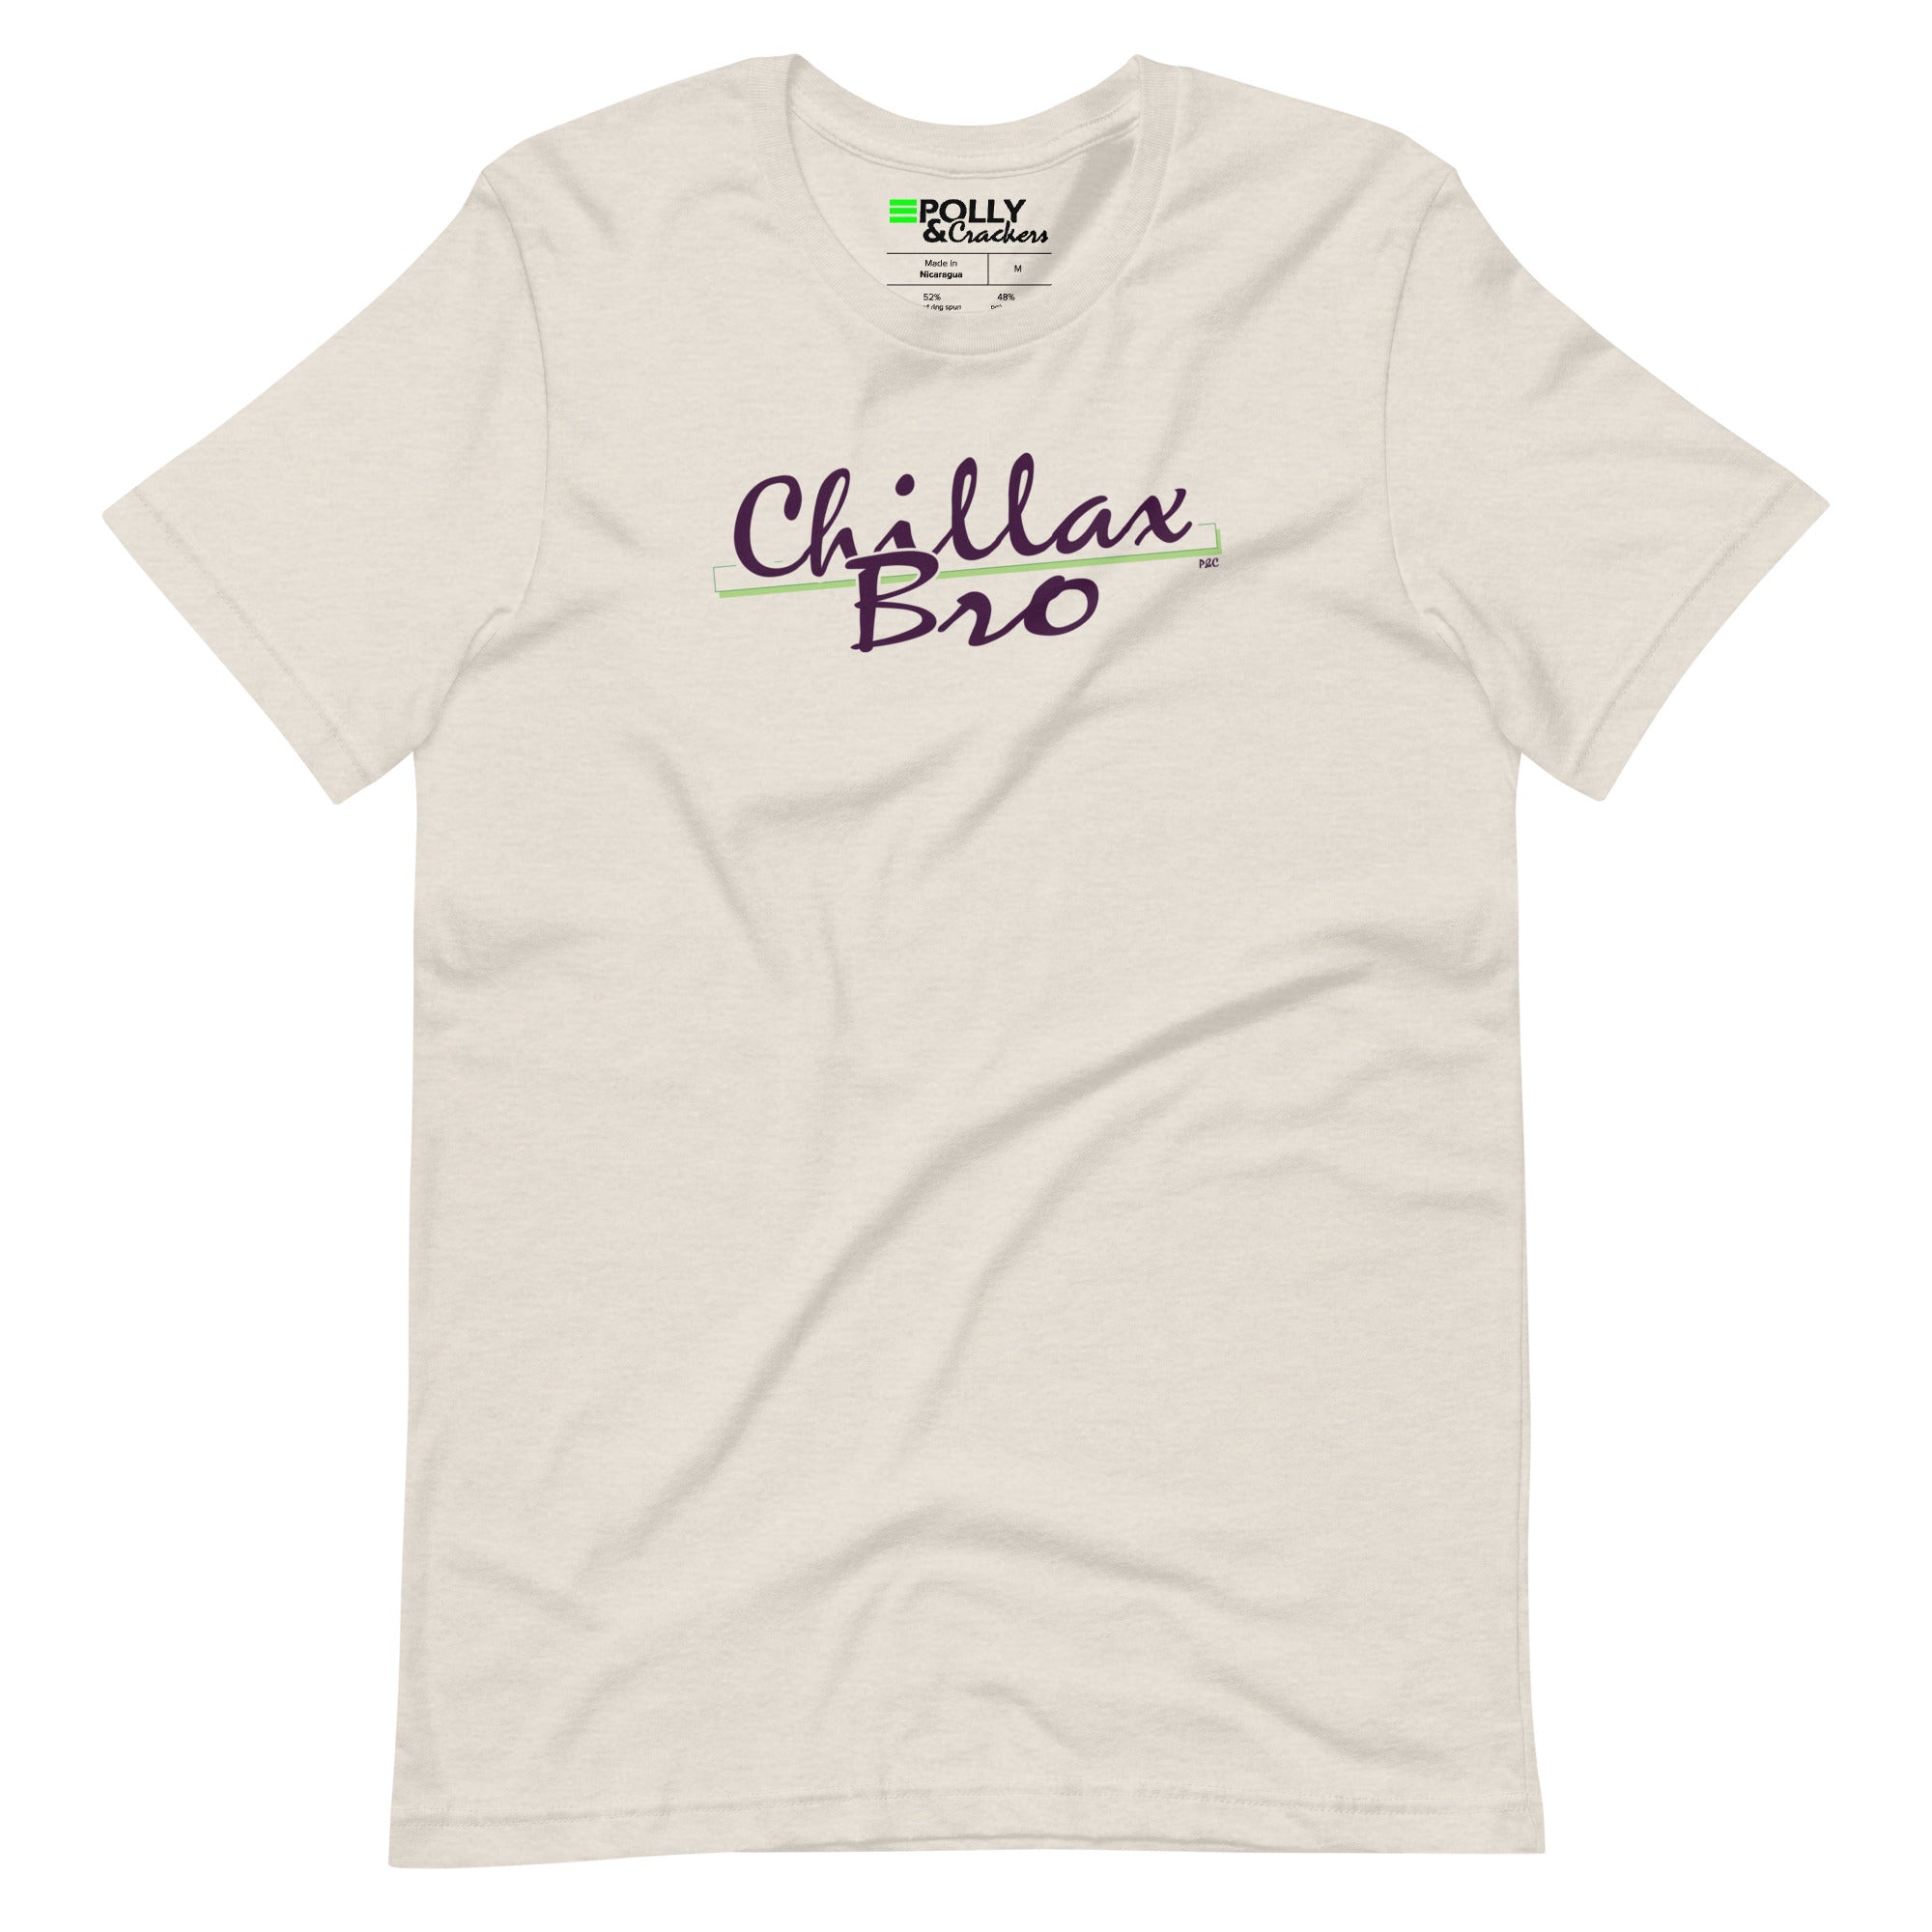 Chillax Bro - Shirt